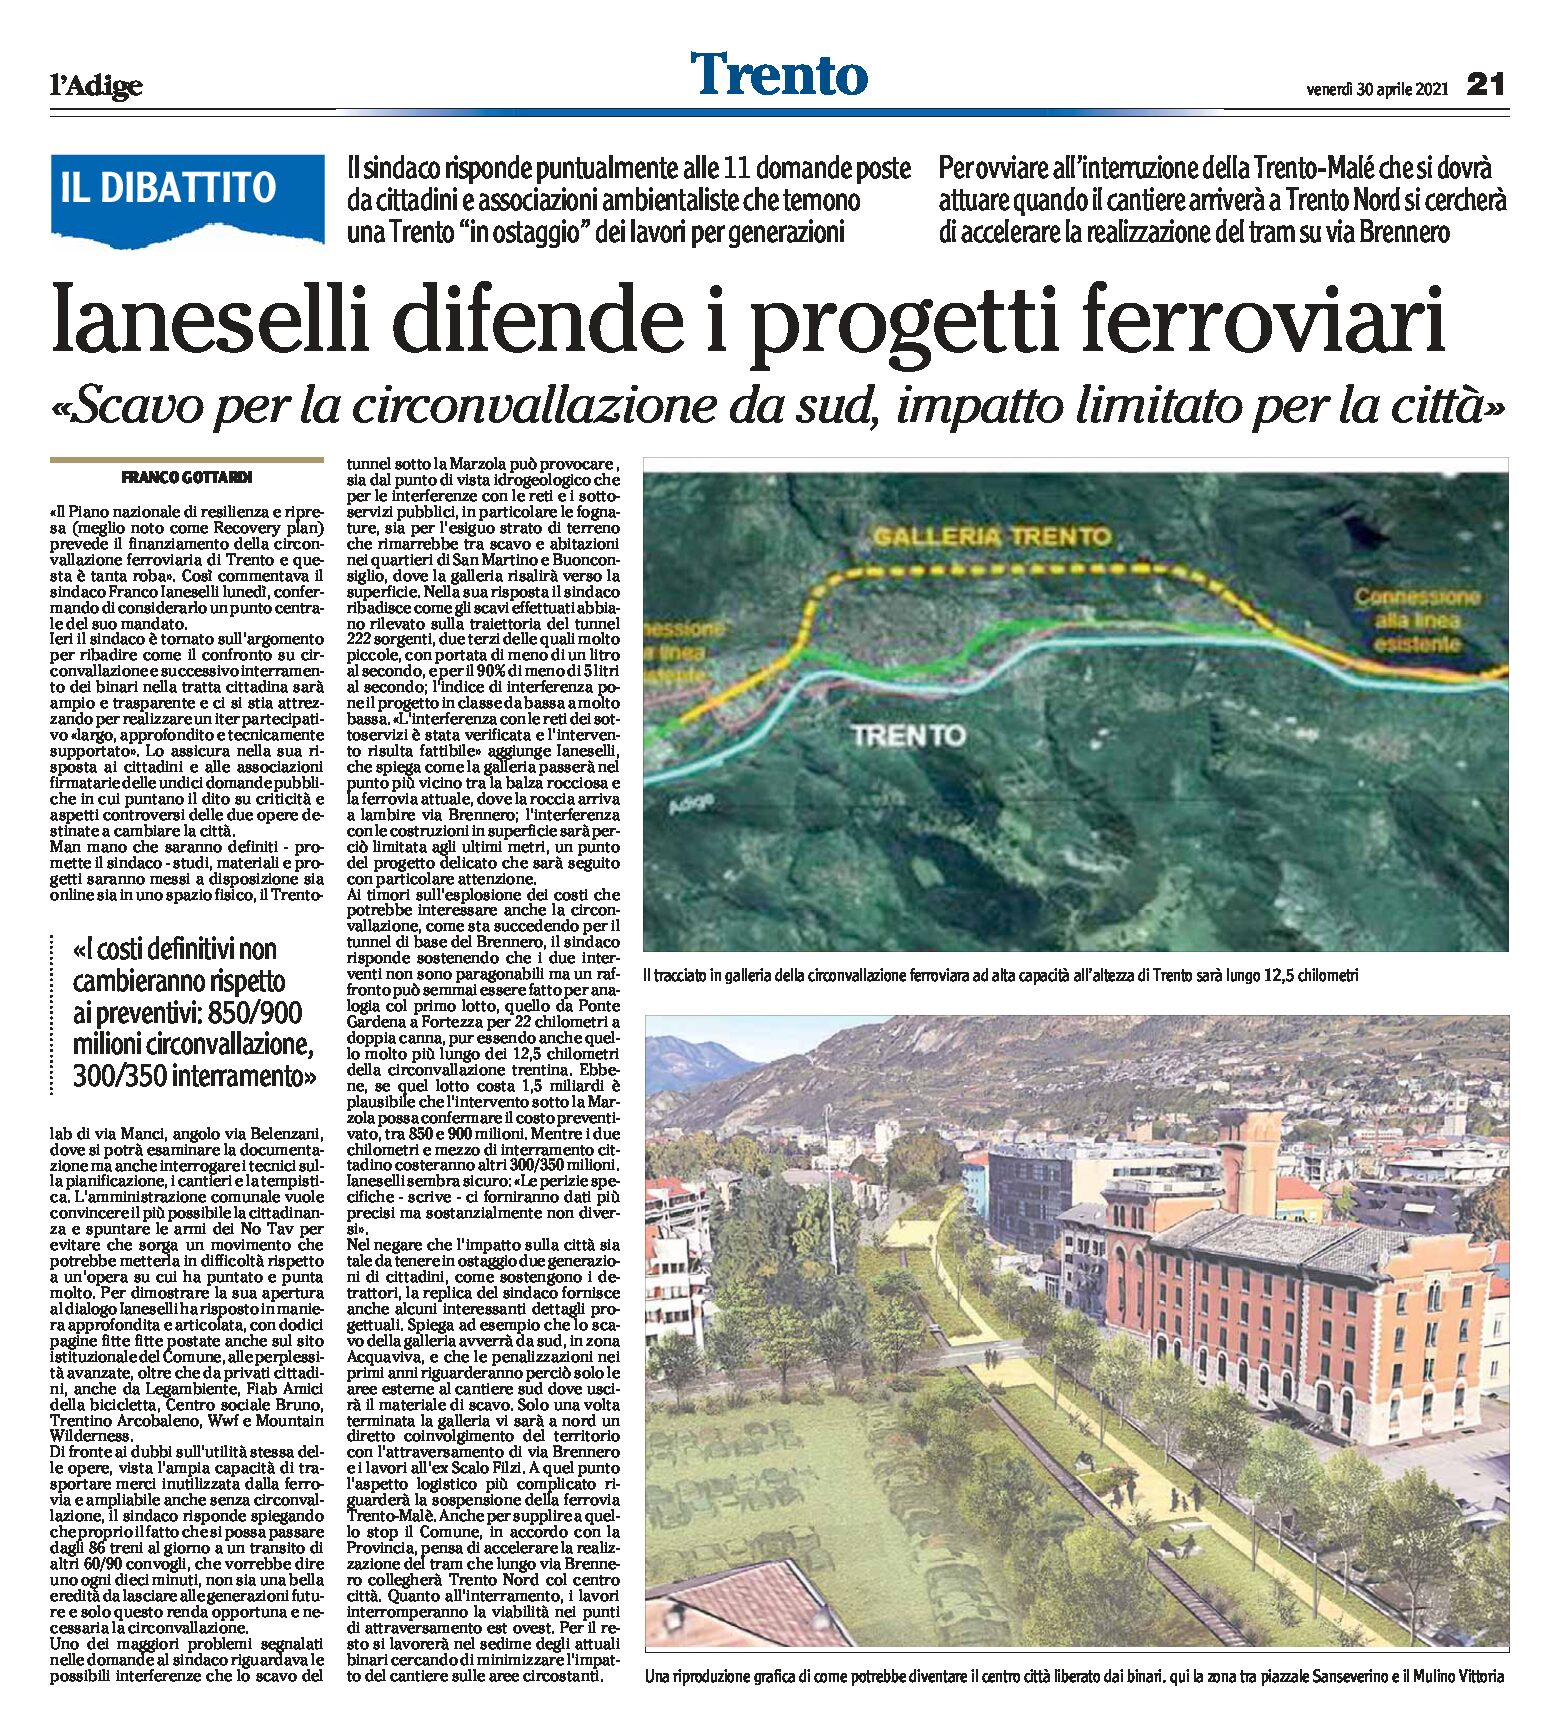 Dibattito: Trento, Ianeselli difende i progetti ferroviari